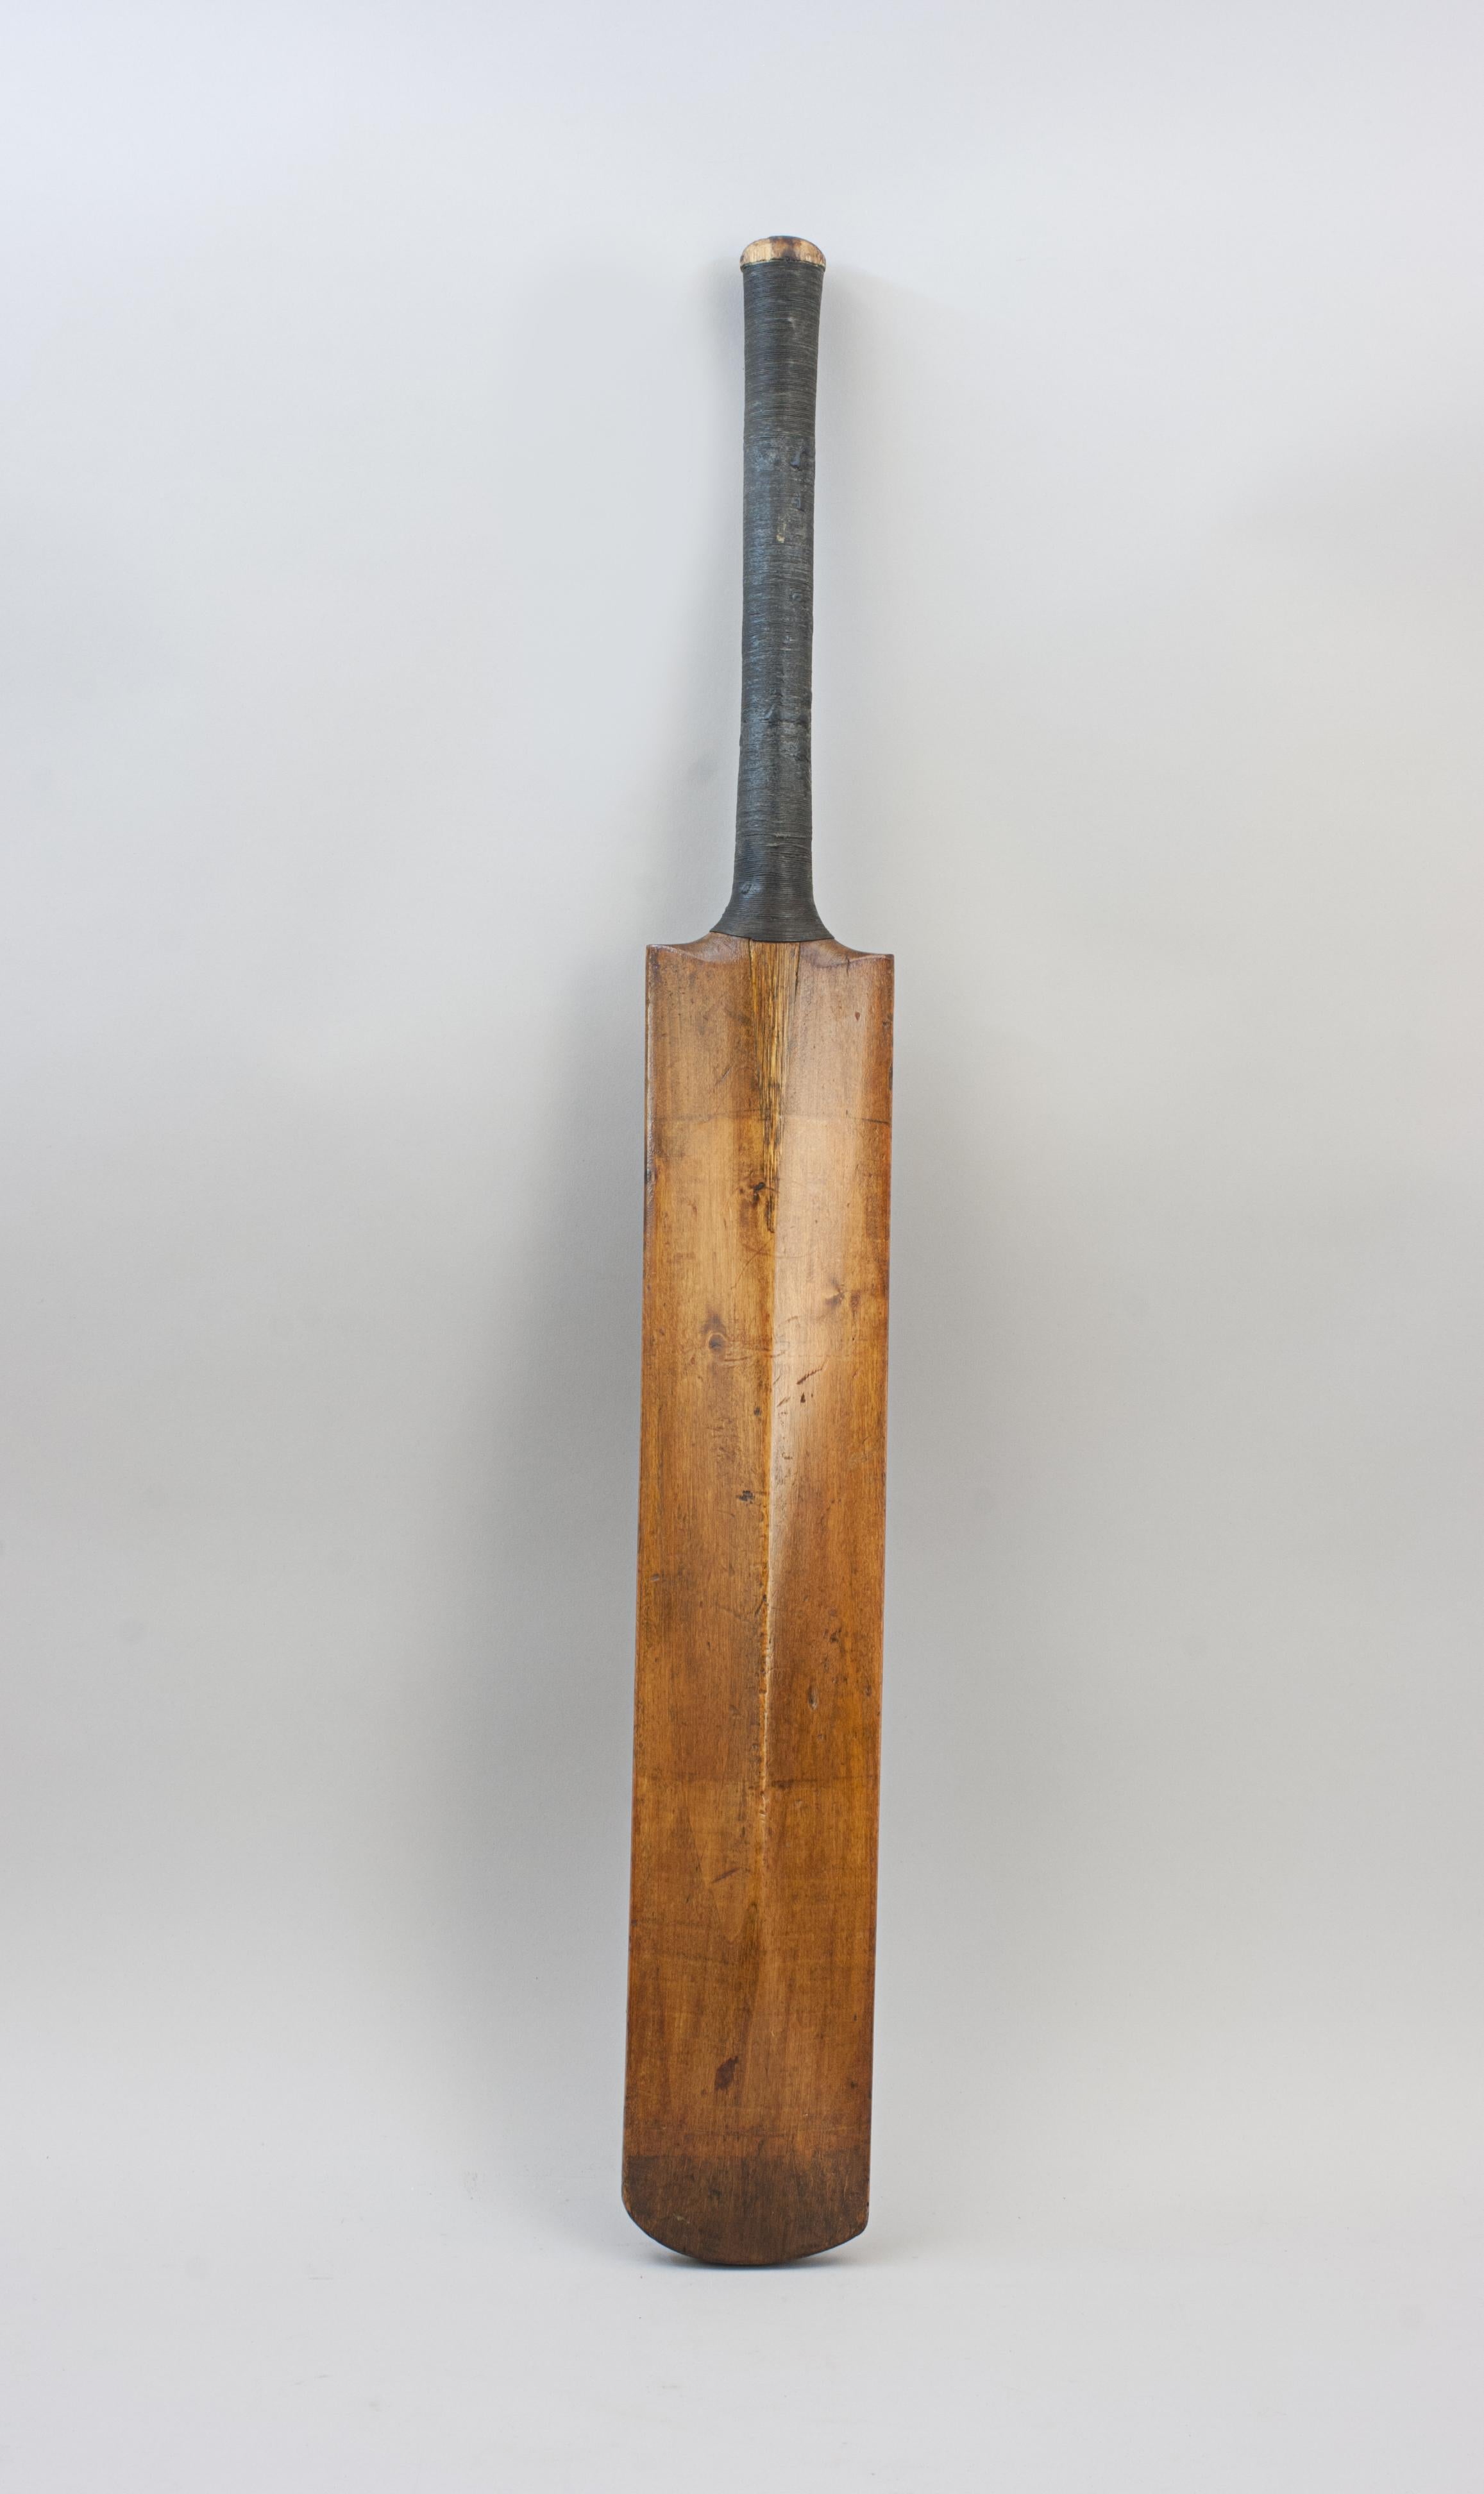 Juniors Willow Cricket Bat.
A good juniors willow cricket bat. The bat with no decipherable makers name. A nice decorative bat with good patina.
